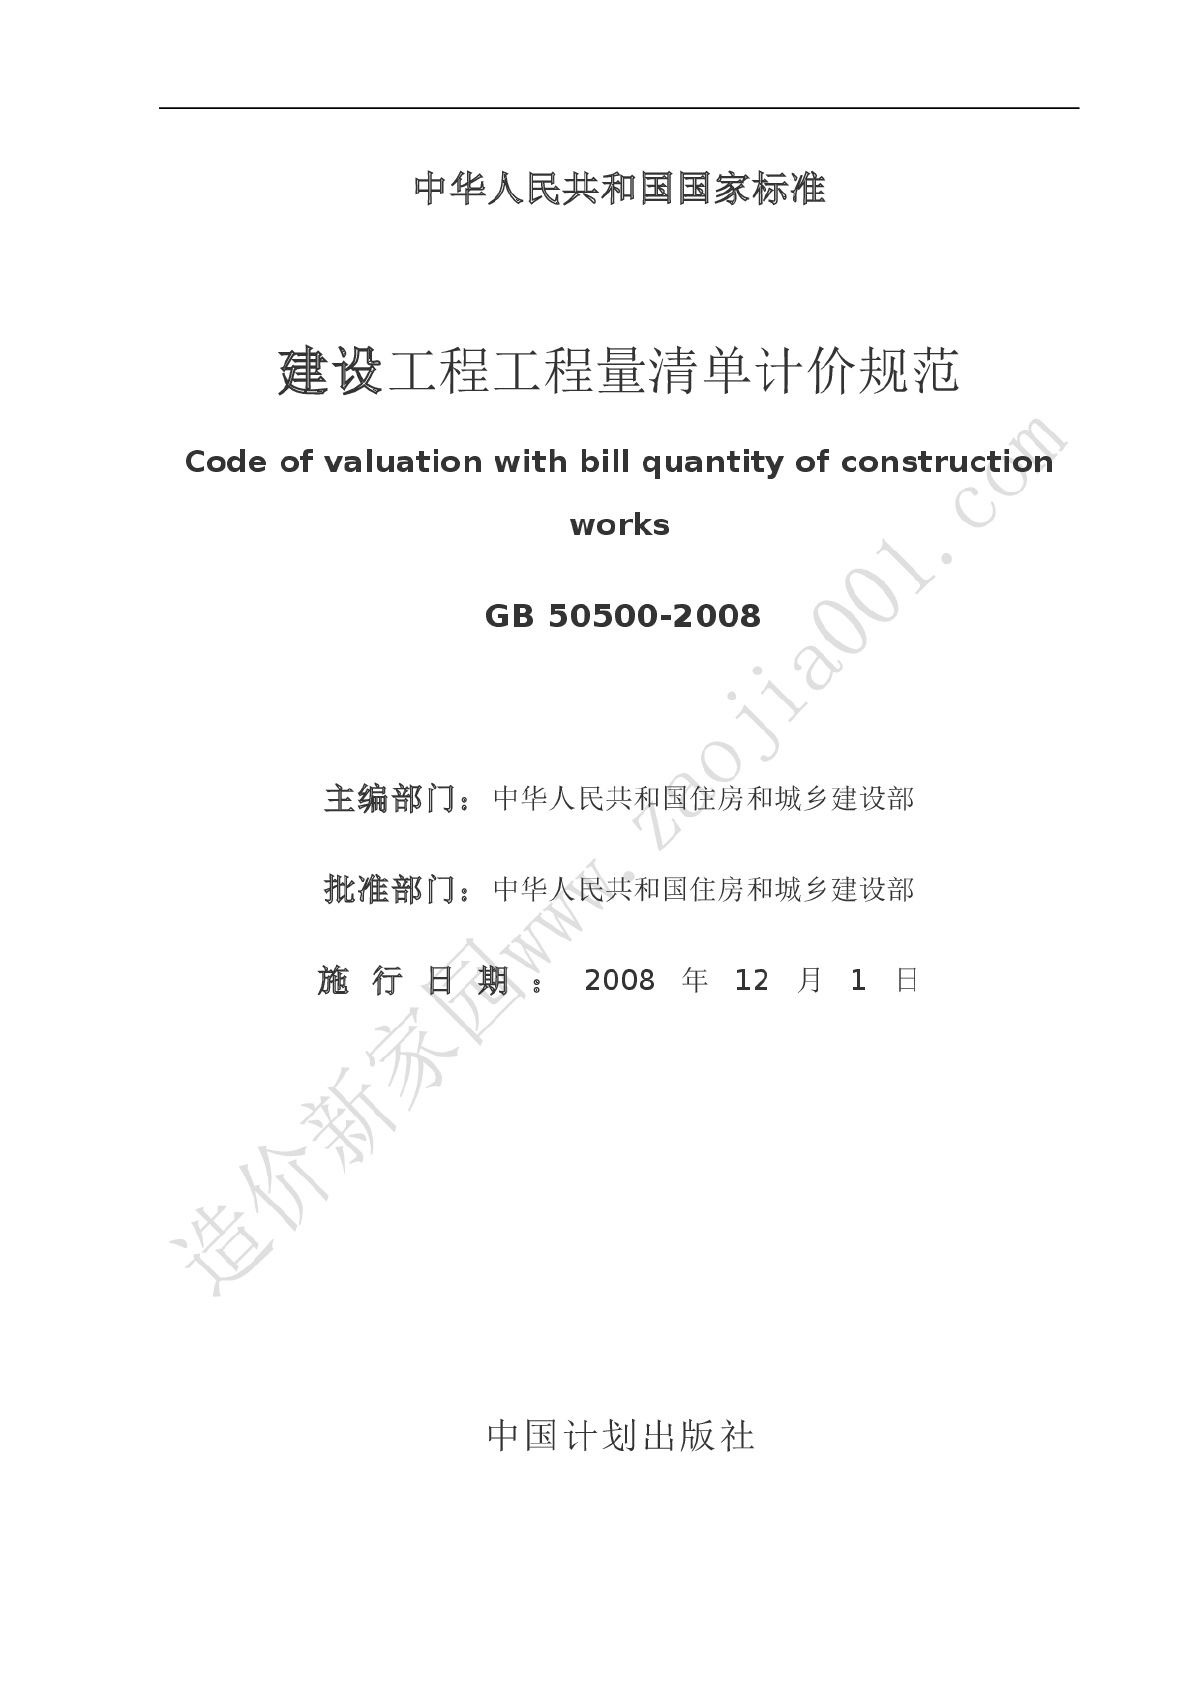 GB50500-2008范正文(word版）